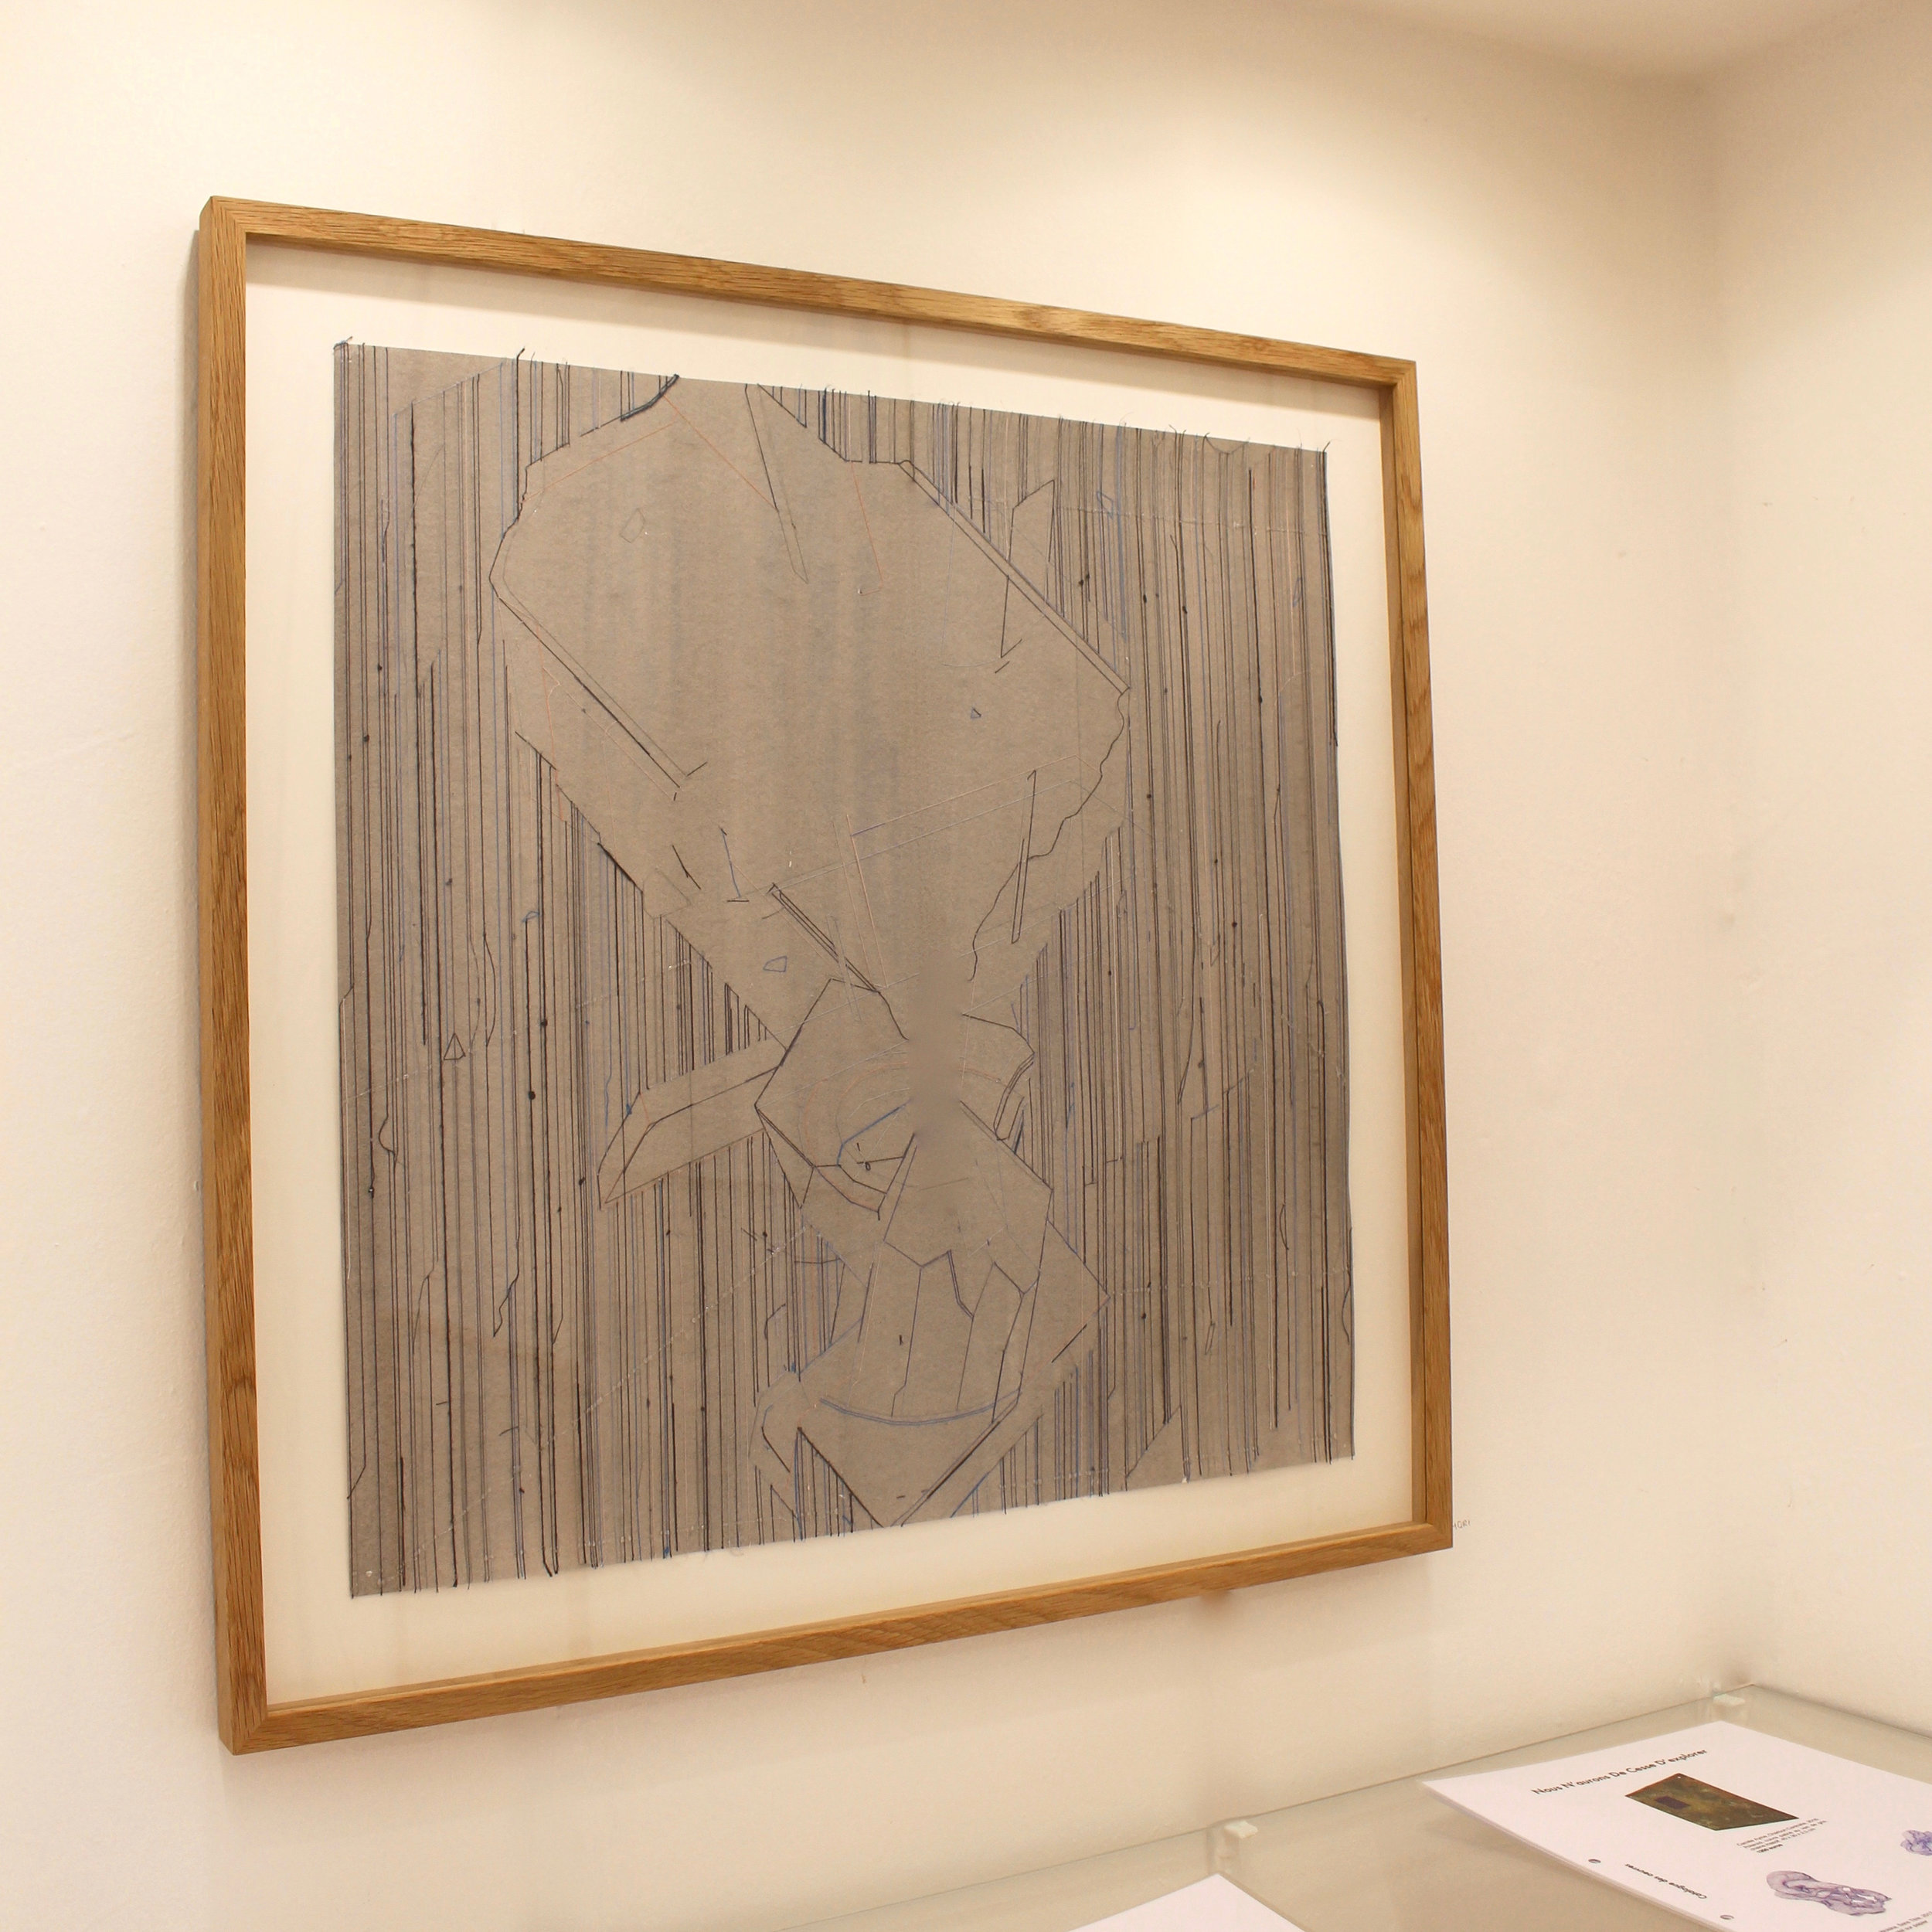   Keita Mori,  Bug Report , 2016. Fil de coton et fil de soie sur papier, 50 cm x 50 cm  